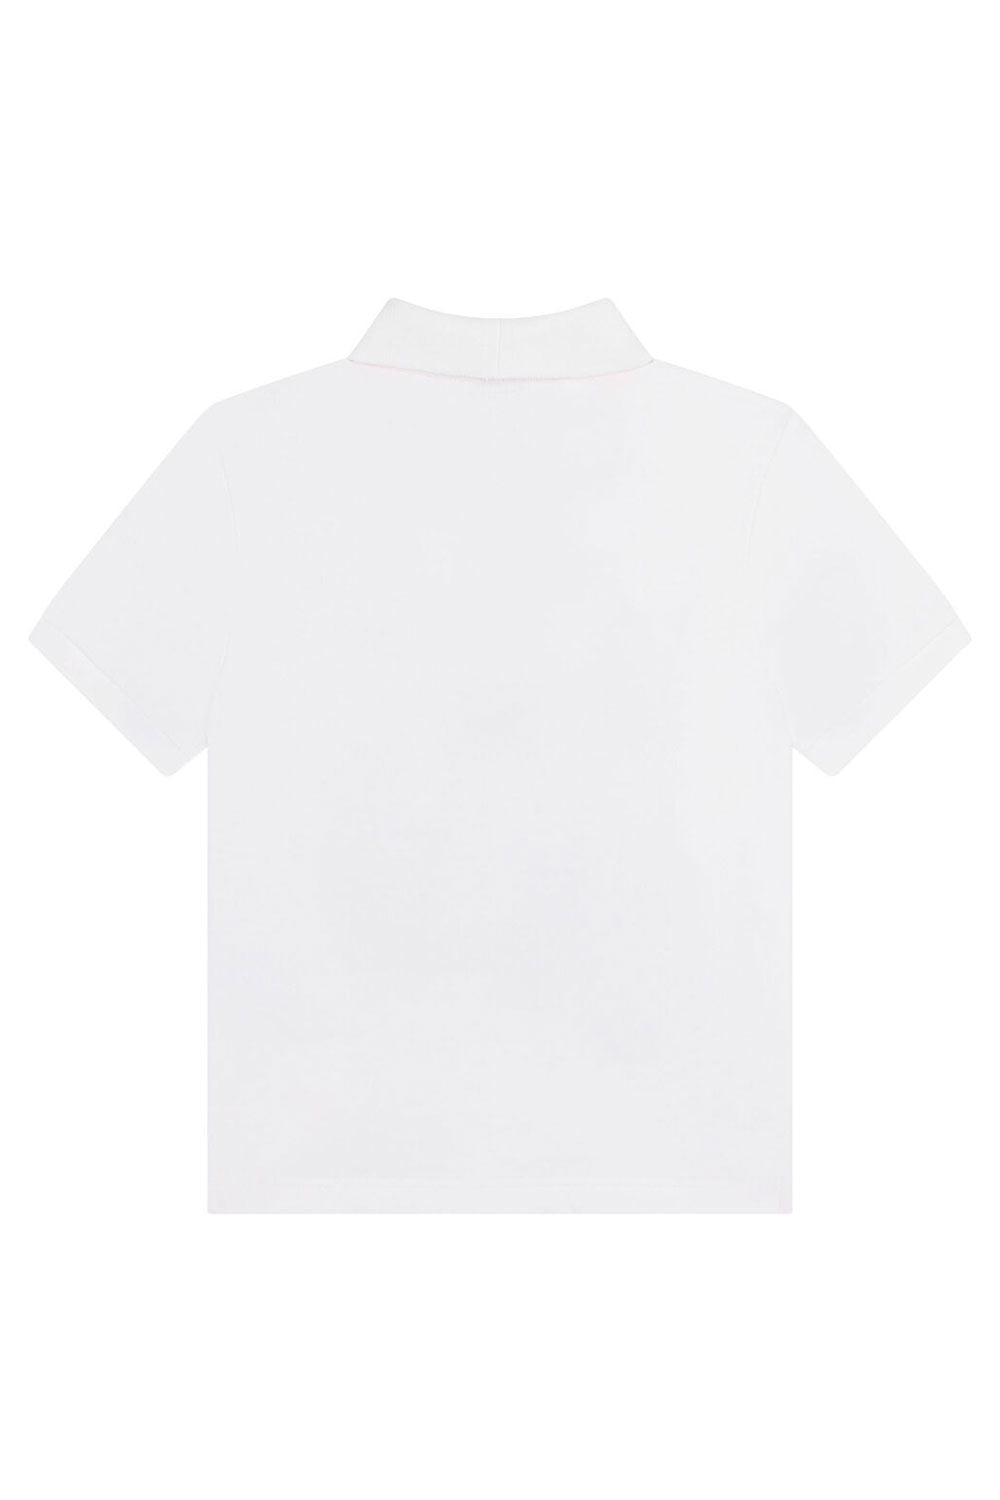 Bag Polo T-Shirt for Boys Bag Polo T-Shirt for Boys Maison7